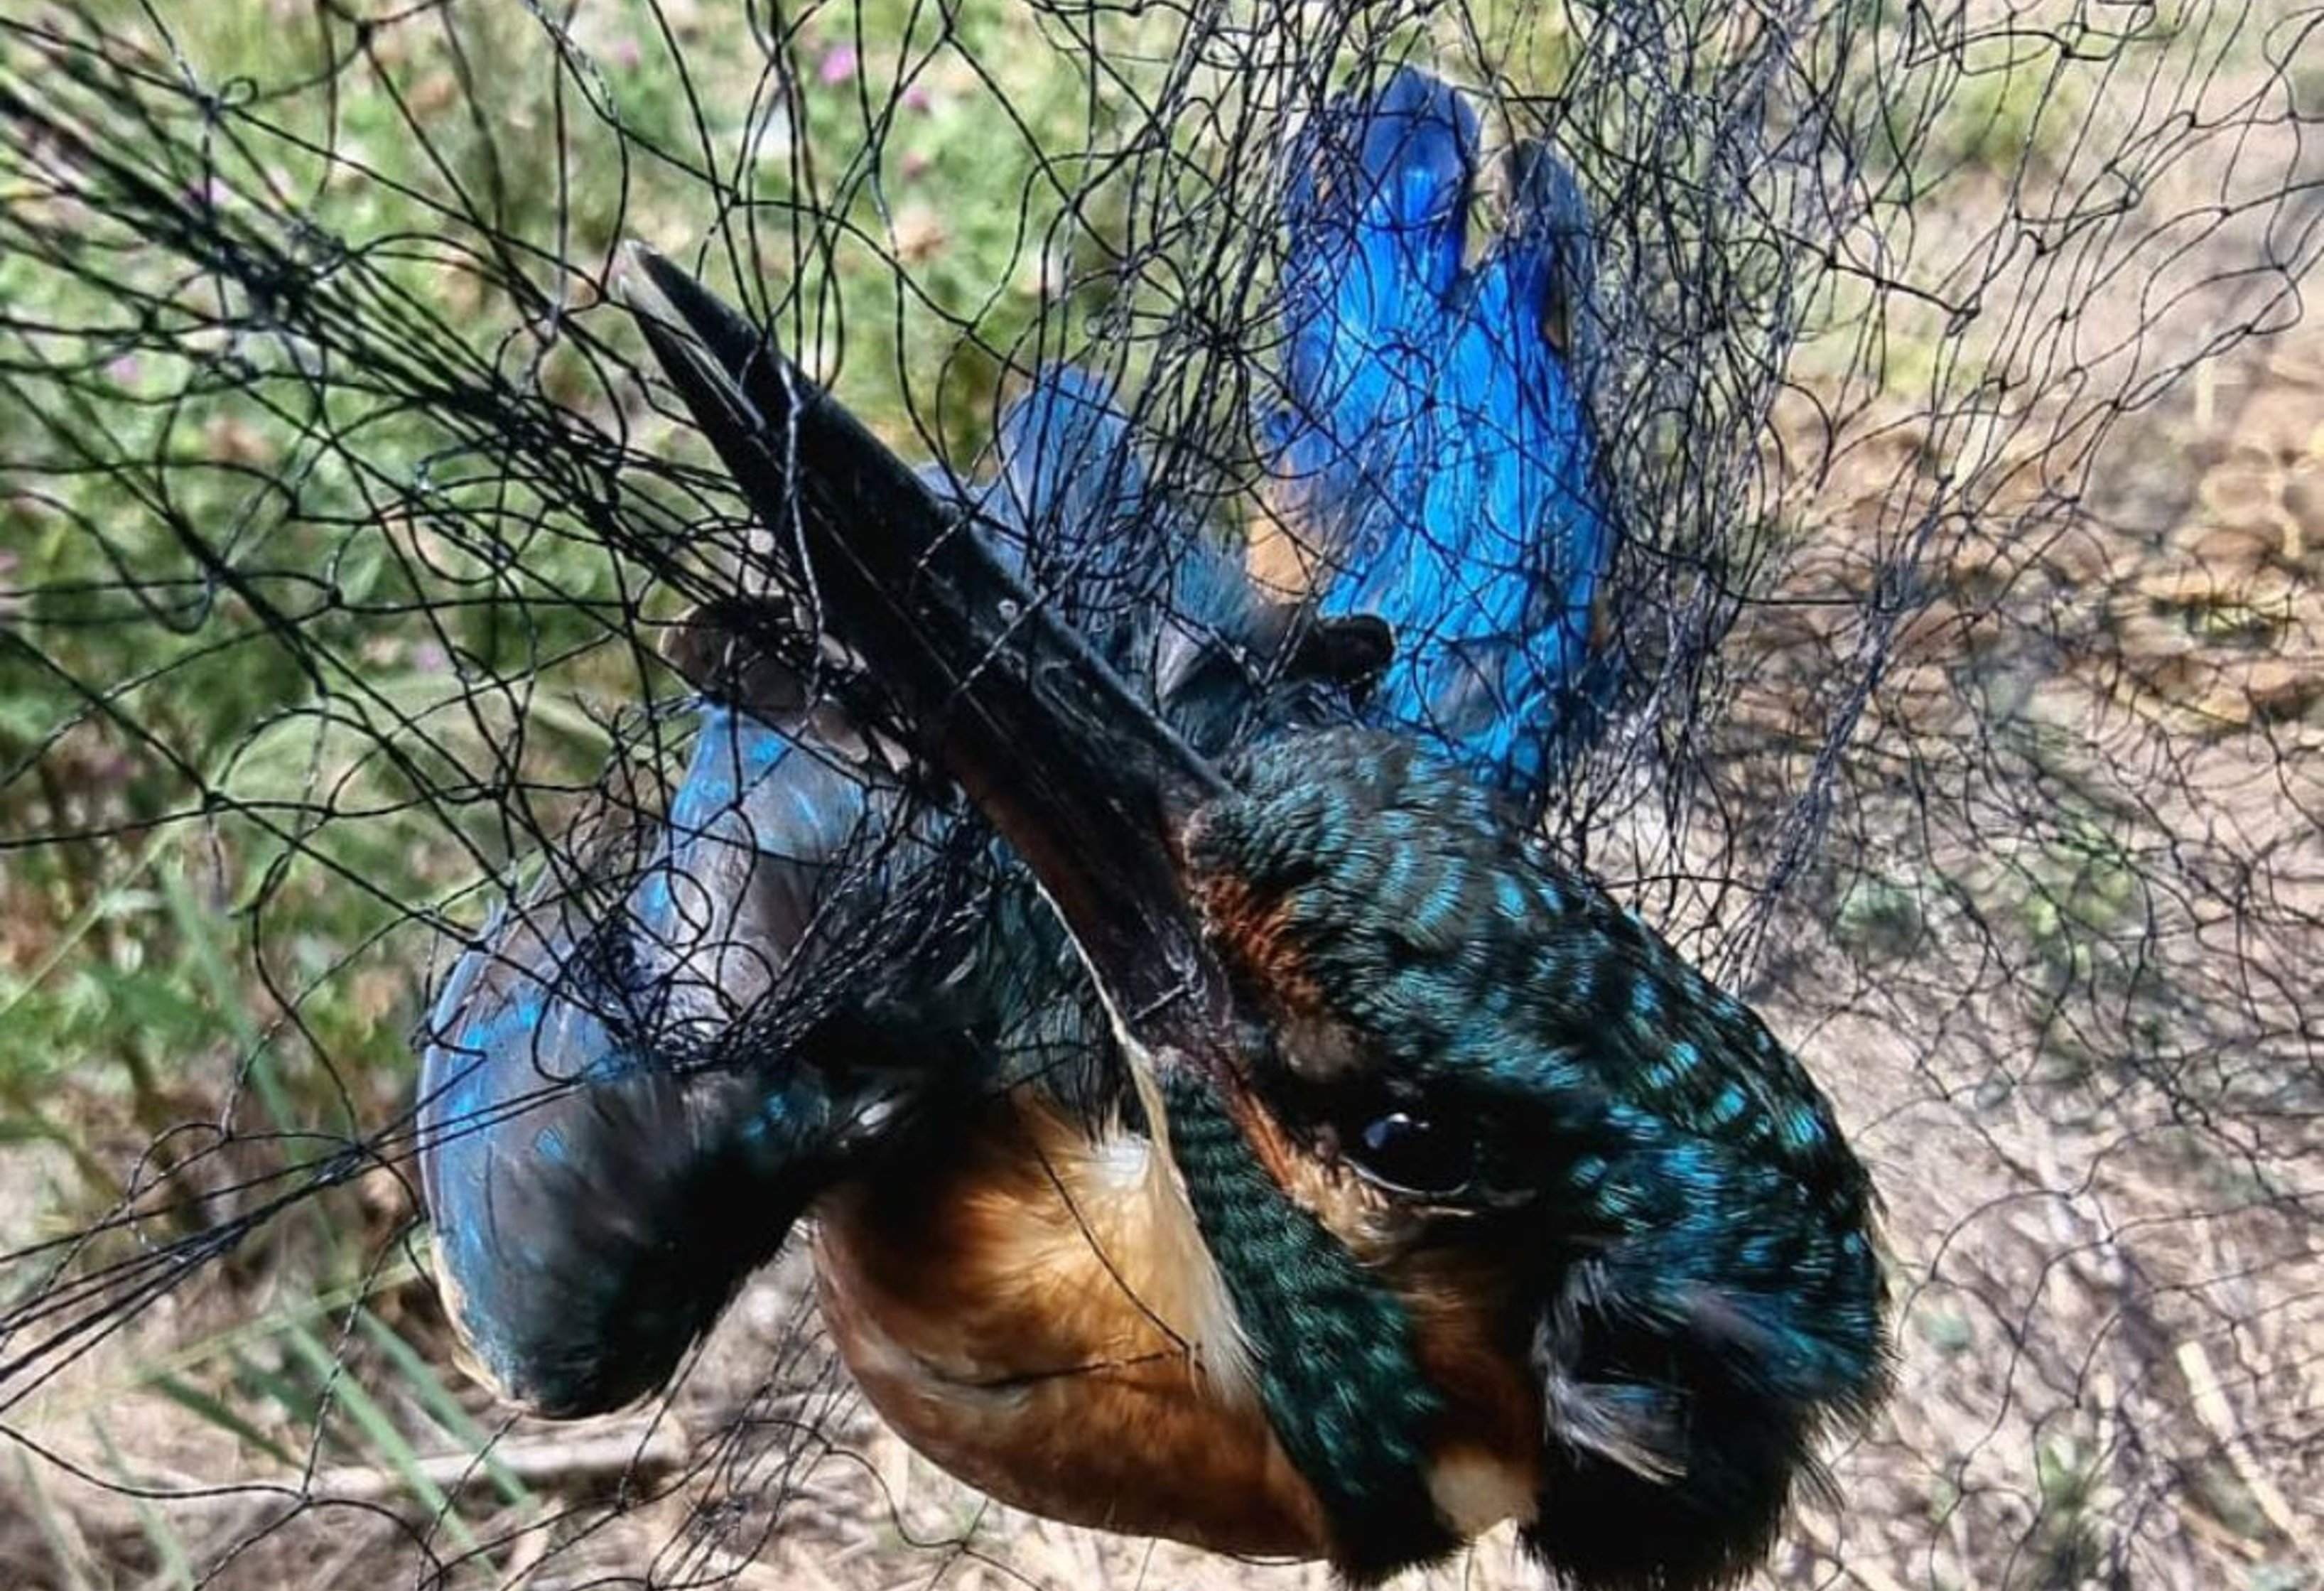 Interceptan en Lugo a un cazador furtivo de pájaros que utilizaba jaulas  trampa en árboles